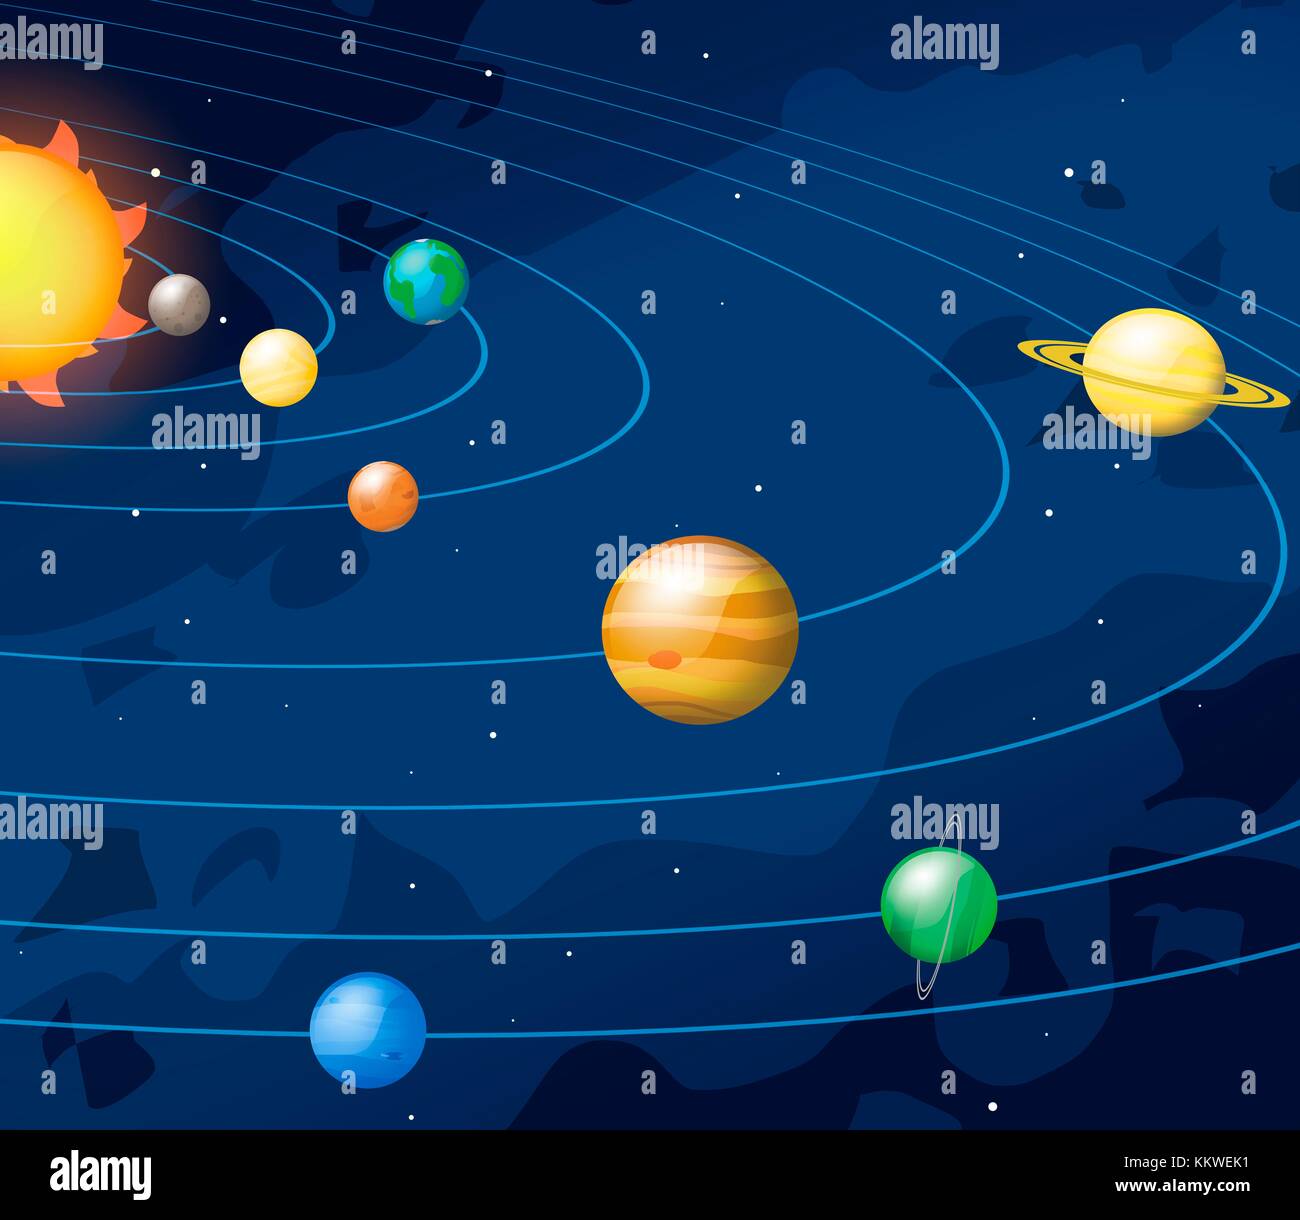 Cartoon-style artwork du système solaire, montrant les chemins des huit principales planètes qu'ils tournent autour du Soleil. Les quatre planètes intérieures sont, à l'intérieur de, Mercure, Vénus, Terre et Mars. Les quatre planètes extérieures sont, à l'intérieur, Jupiter, Saturne, Uranus et Neptune. Banque D'Images